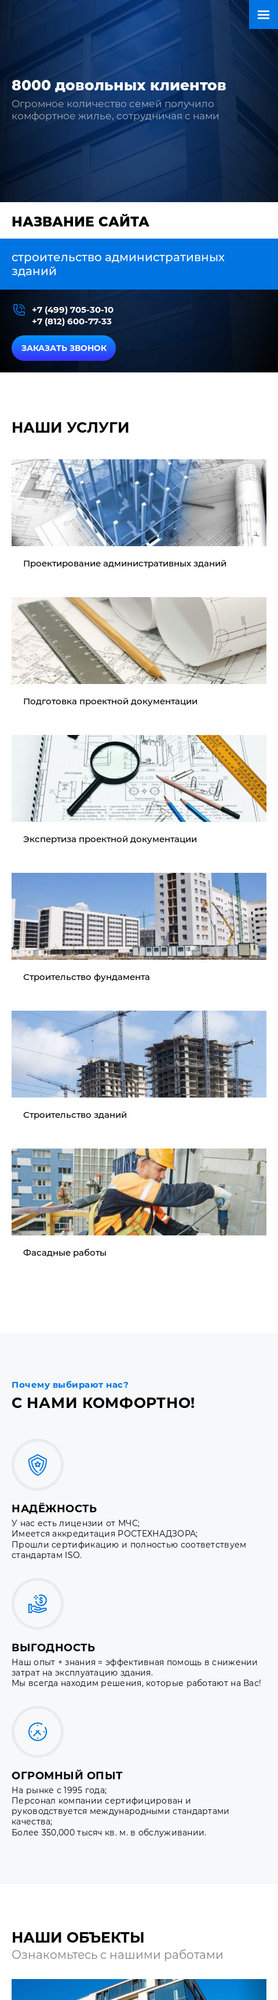 Готовый Сайт-Бизнес № 1992492 - Строительство административных зданий (Мобильная версия)